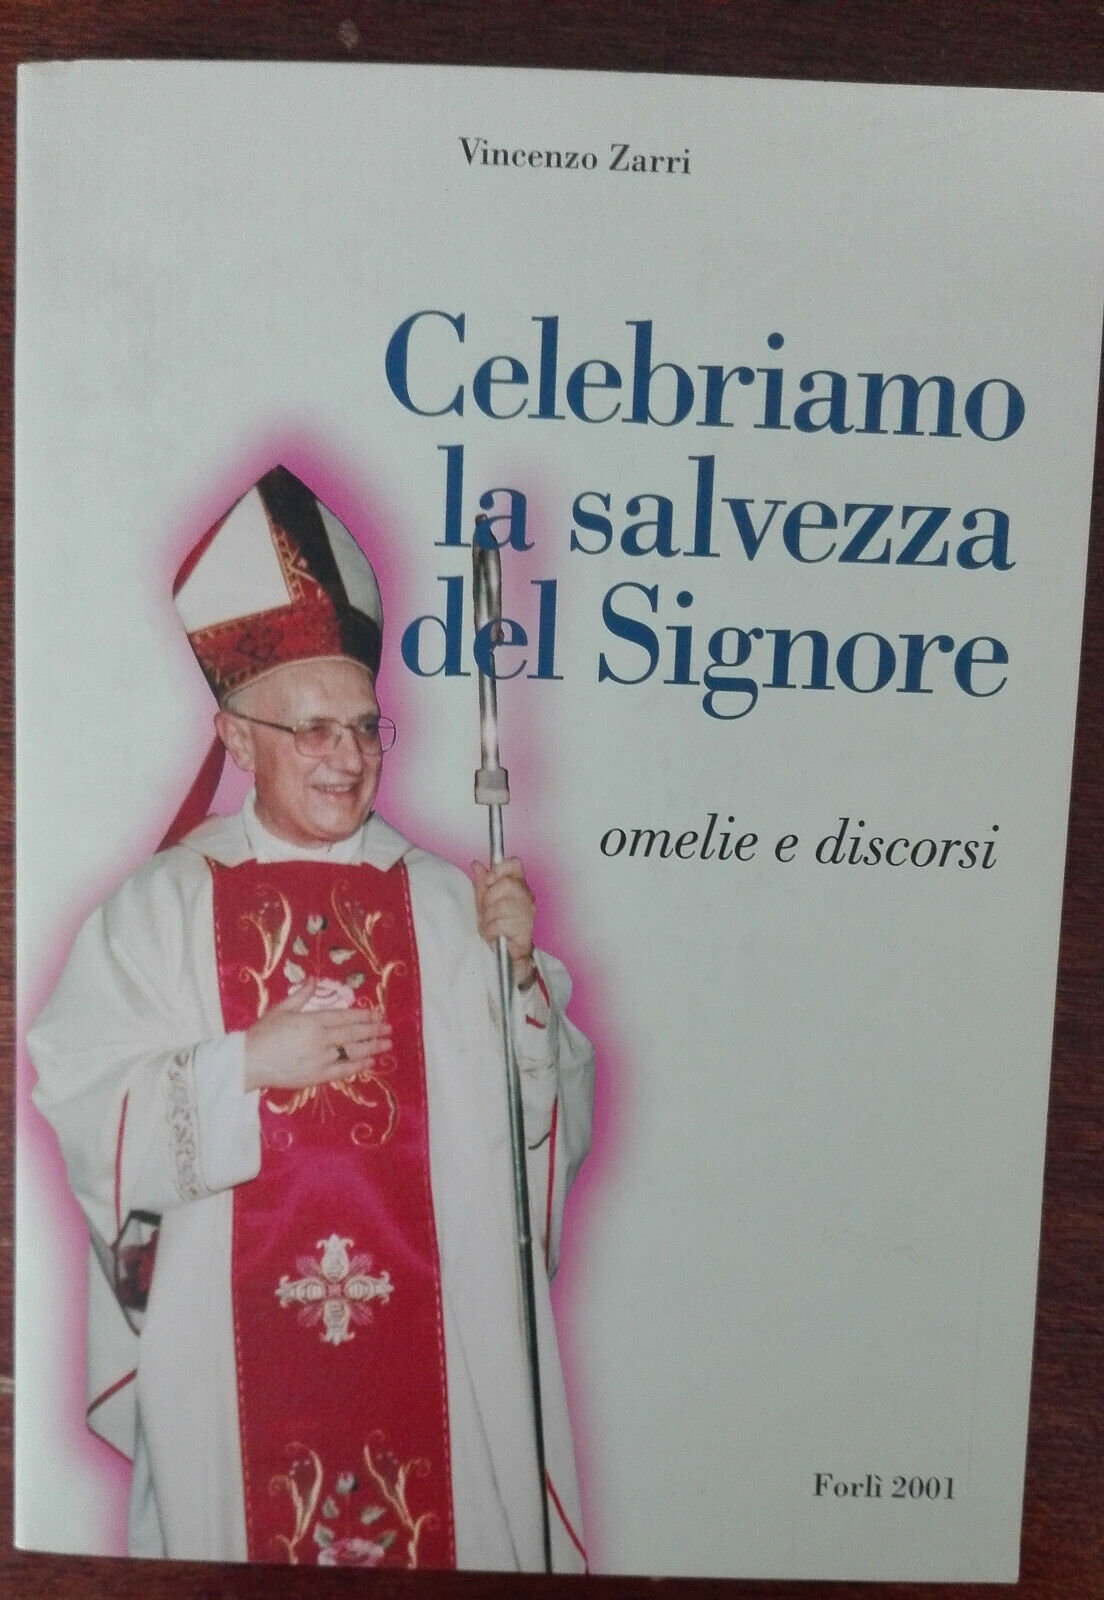 Celebriamo la salvezza del Signore - Vincenzo Zarri, Forl?, 2001 - A